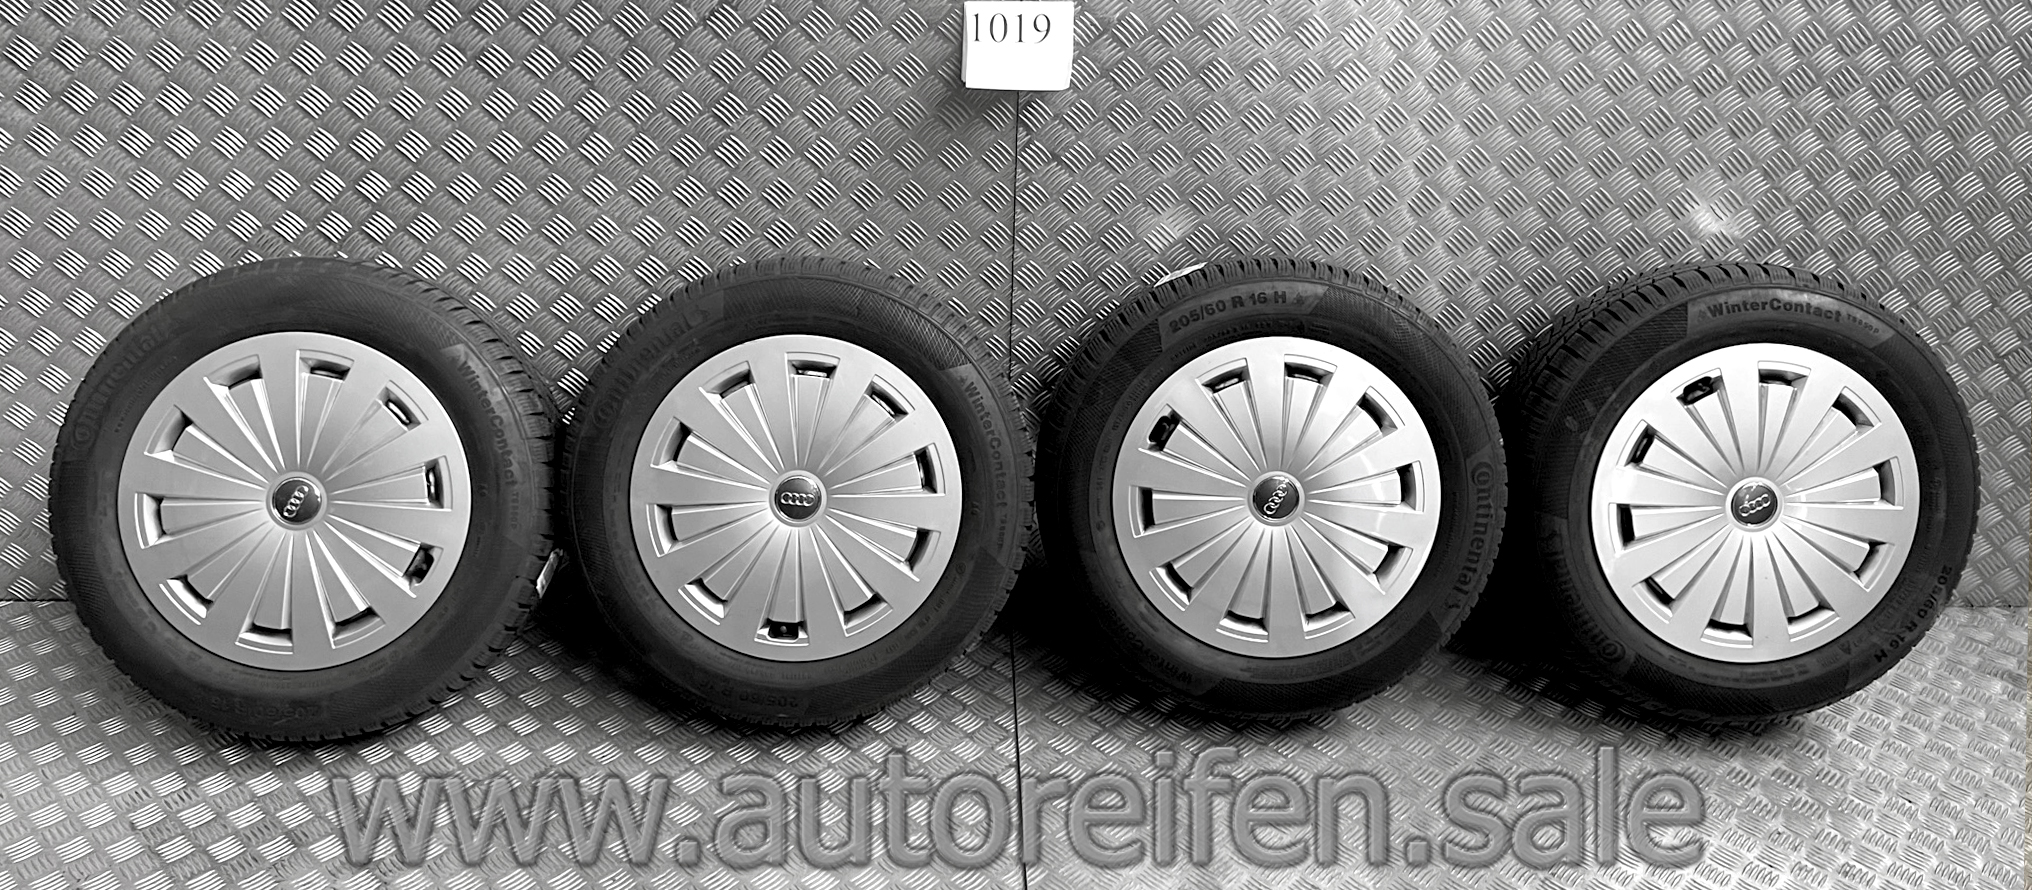 Audi A4 Winterreifen 205/60 R16 92H m+s Continental mit Alufelgen |  Art.Nr.: 1019 – AUTOREIFEN SALE